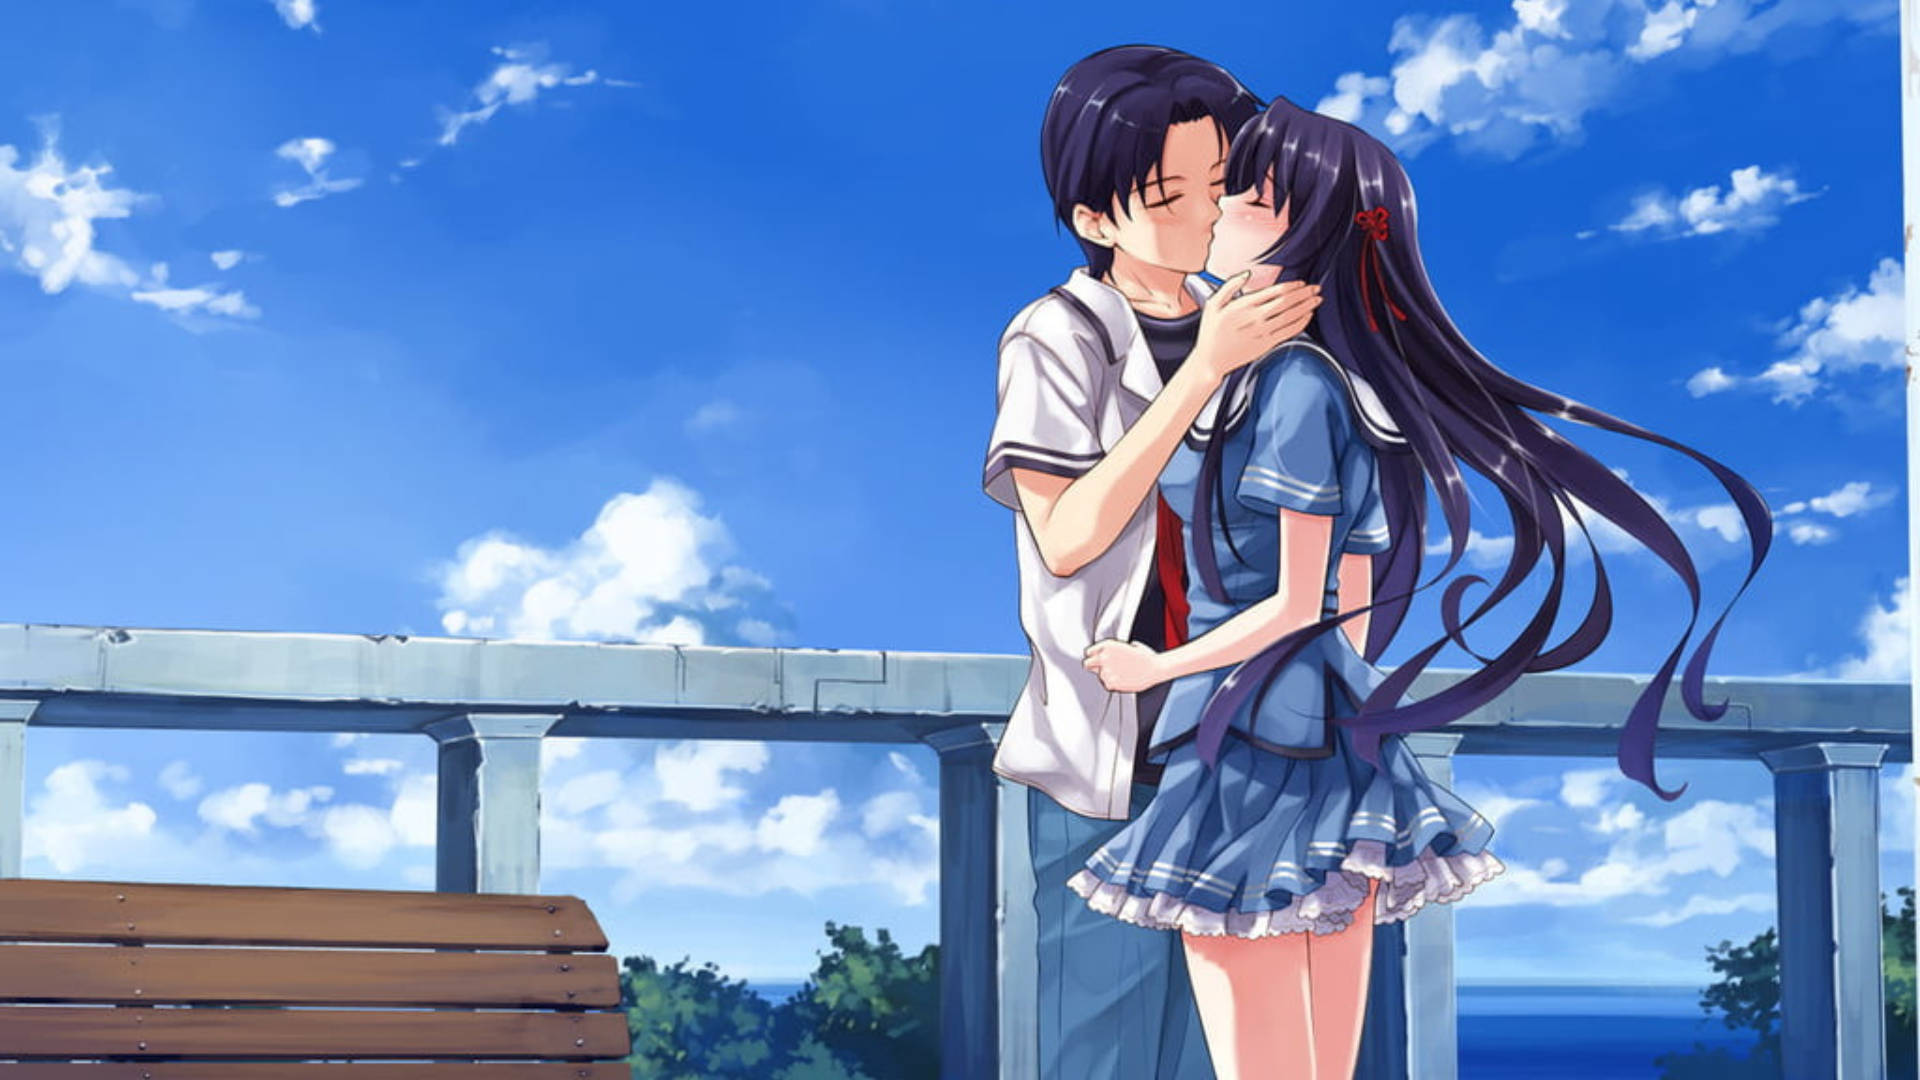 Anime kiss GIF | Romance Anime Amino-hanic.com.vn